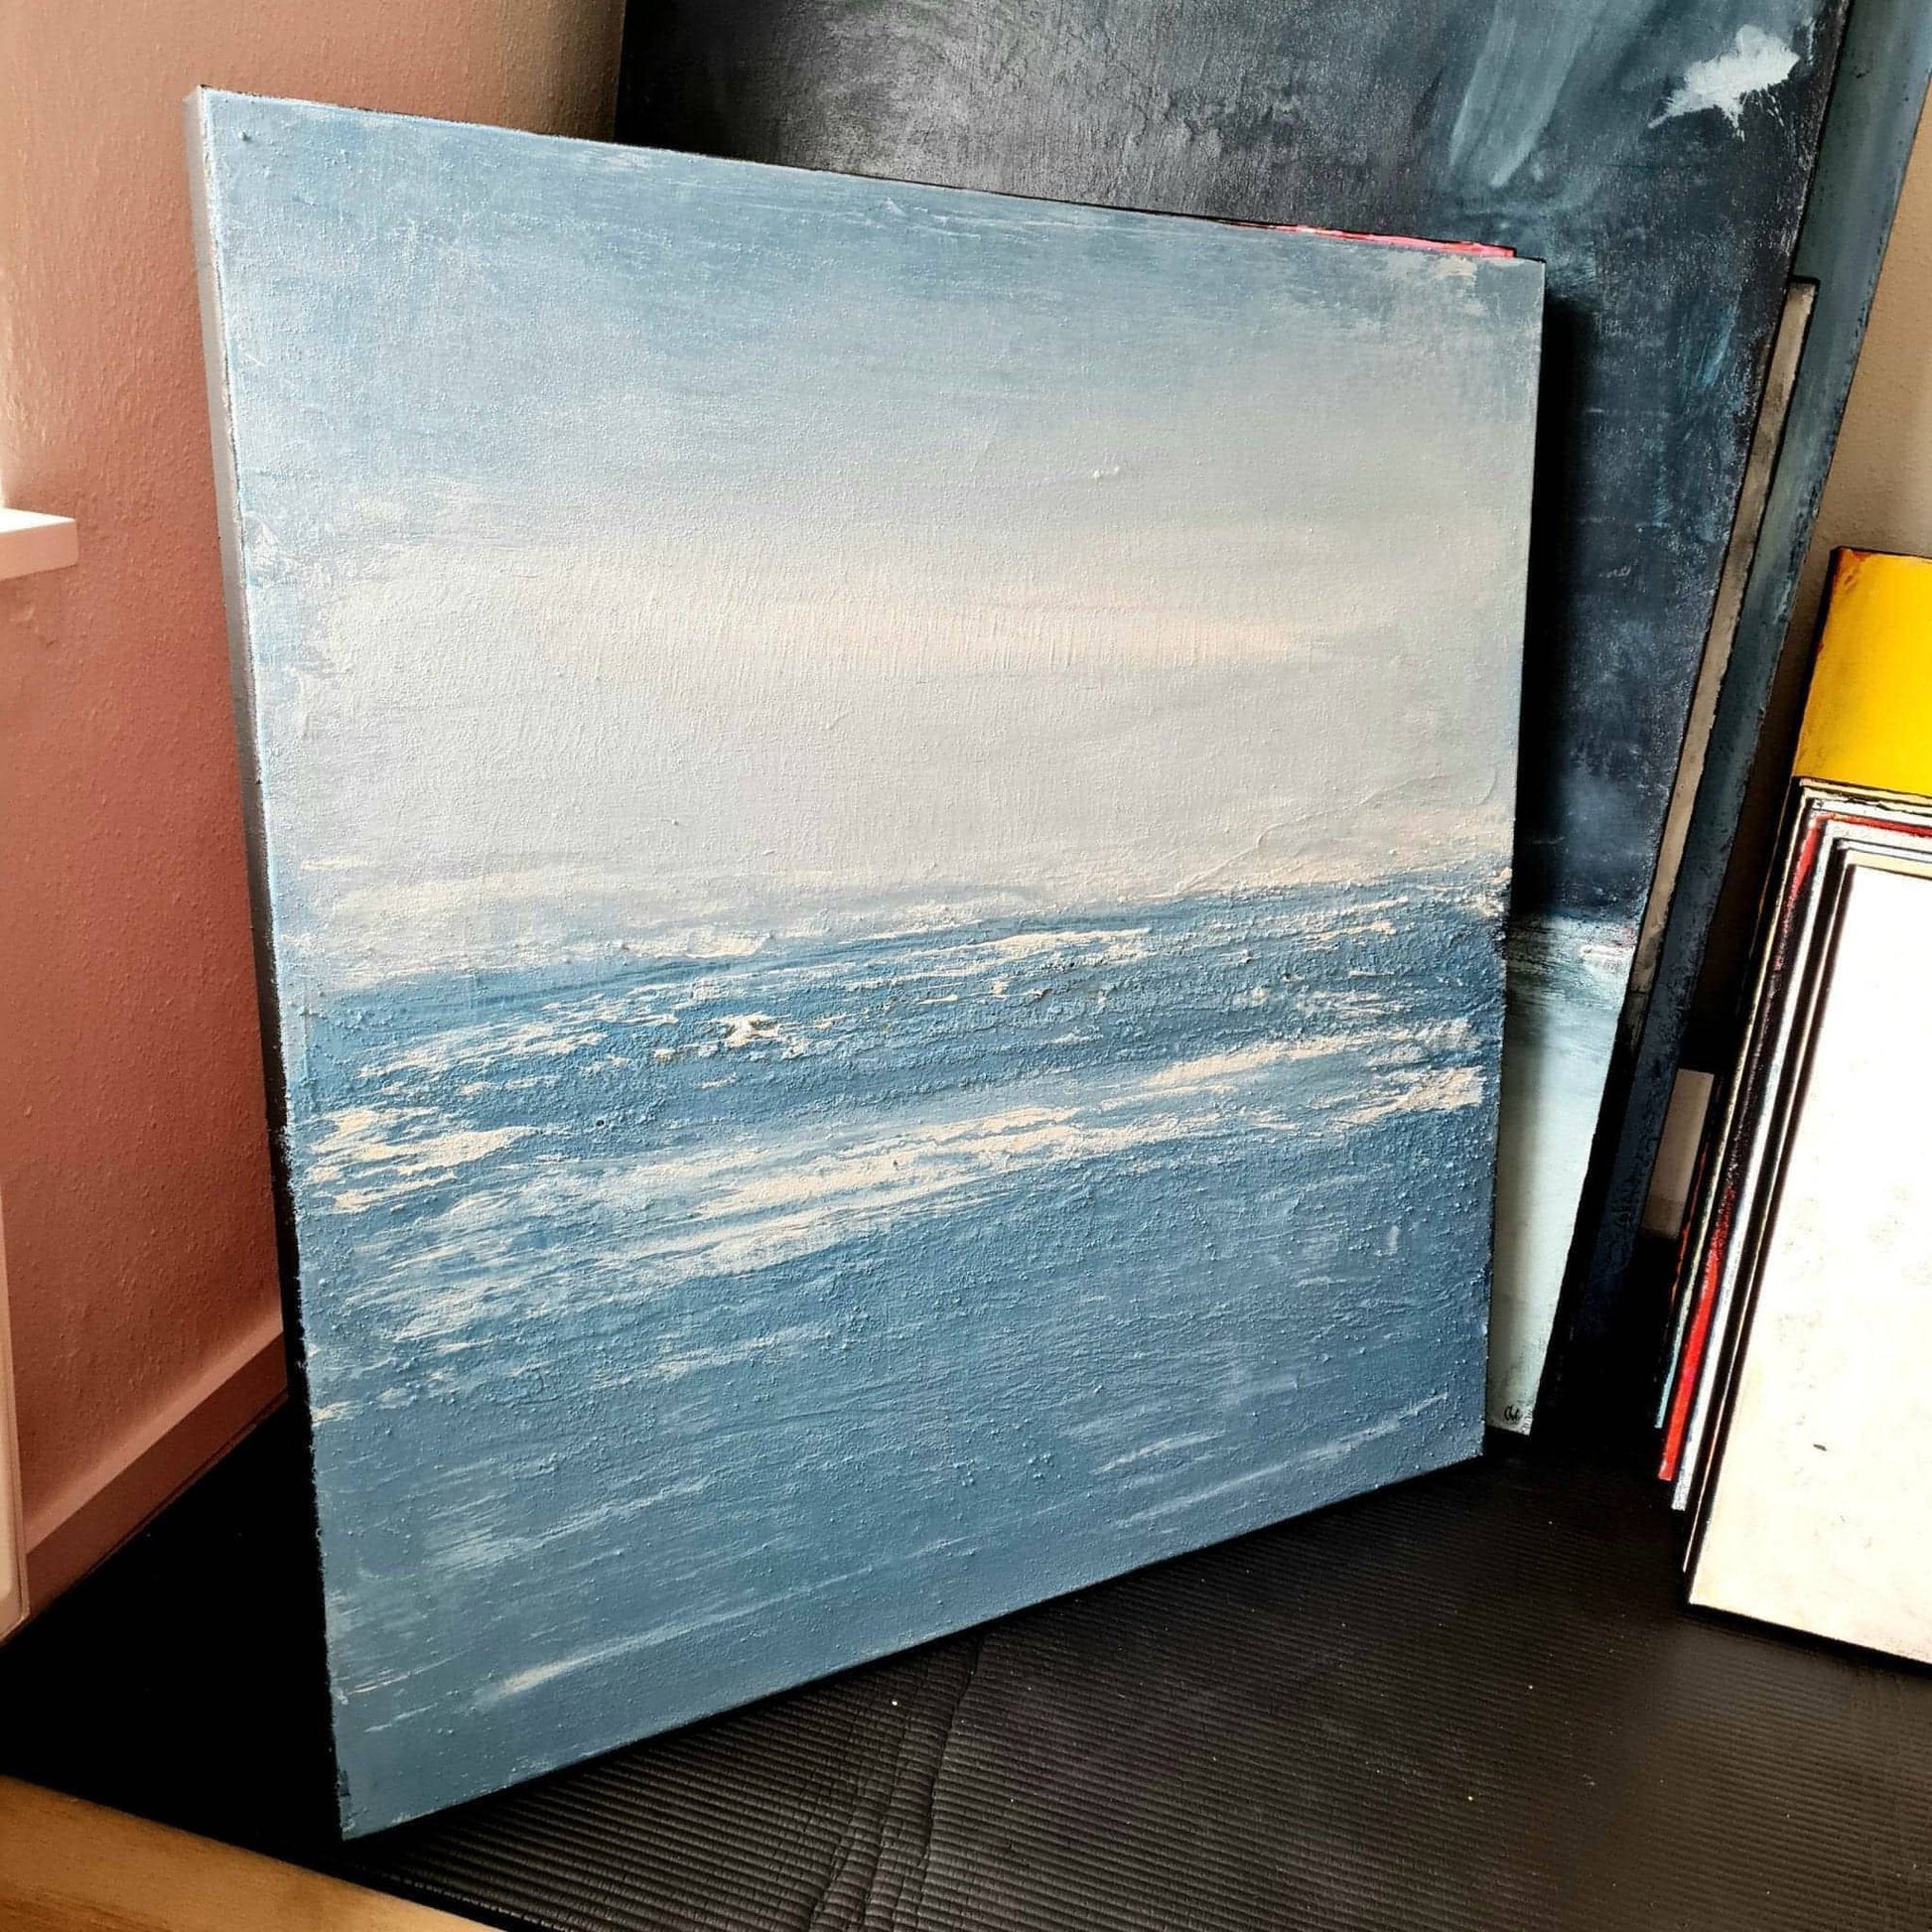 Auftragskunst, abstrakte Bilder, Abstraktes maritimes Gemälde in Blautönen Küstennebel,blaues-bild-mit-wellen-auftragsmalerei, abstrakte Bilder kaufen ,